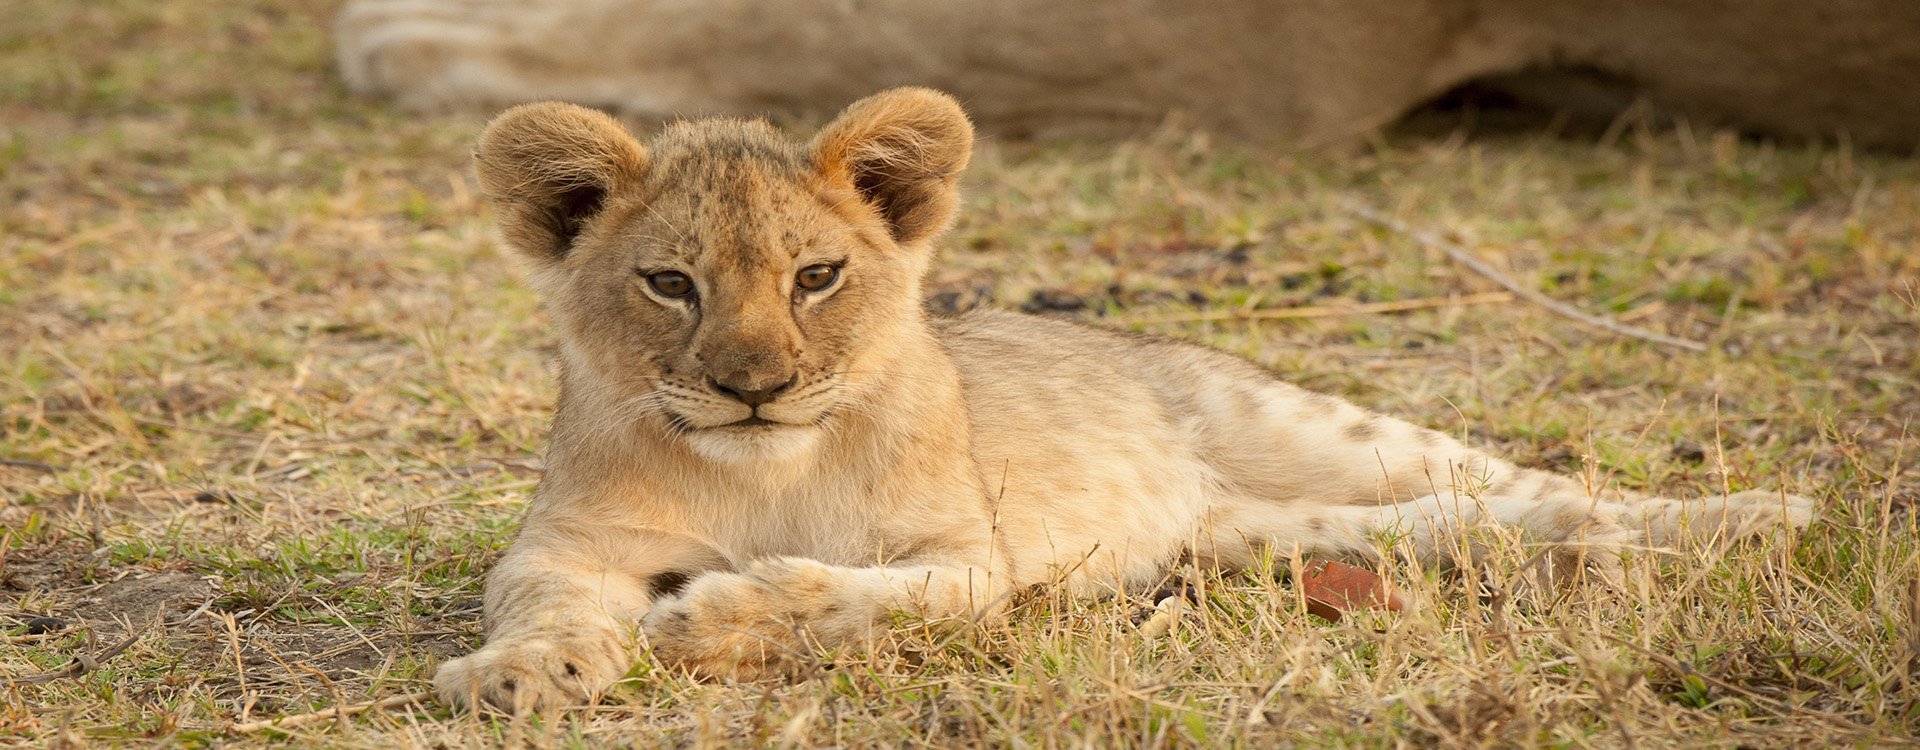 Zambia_Lion Cub